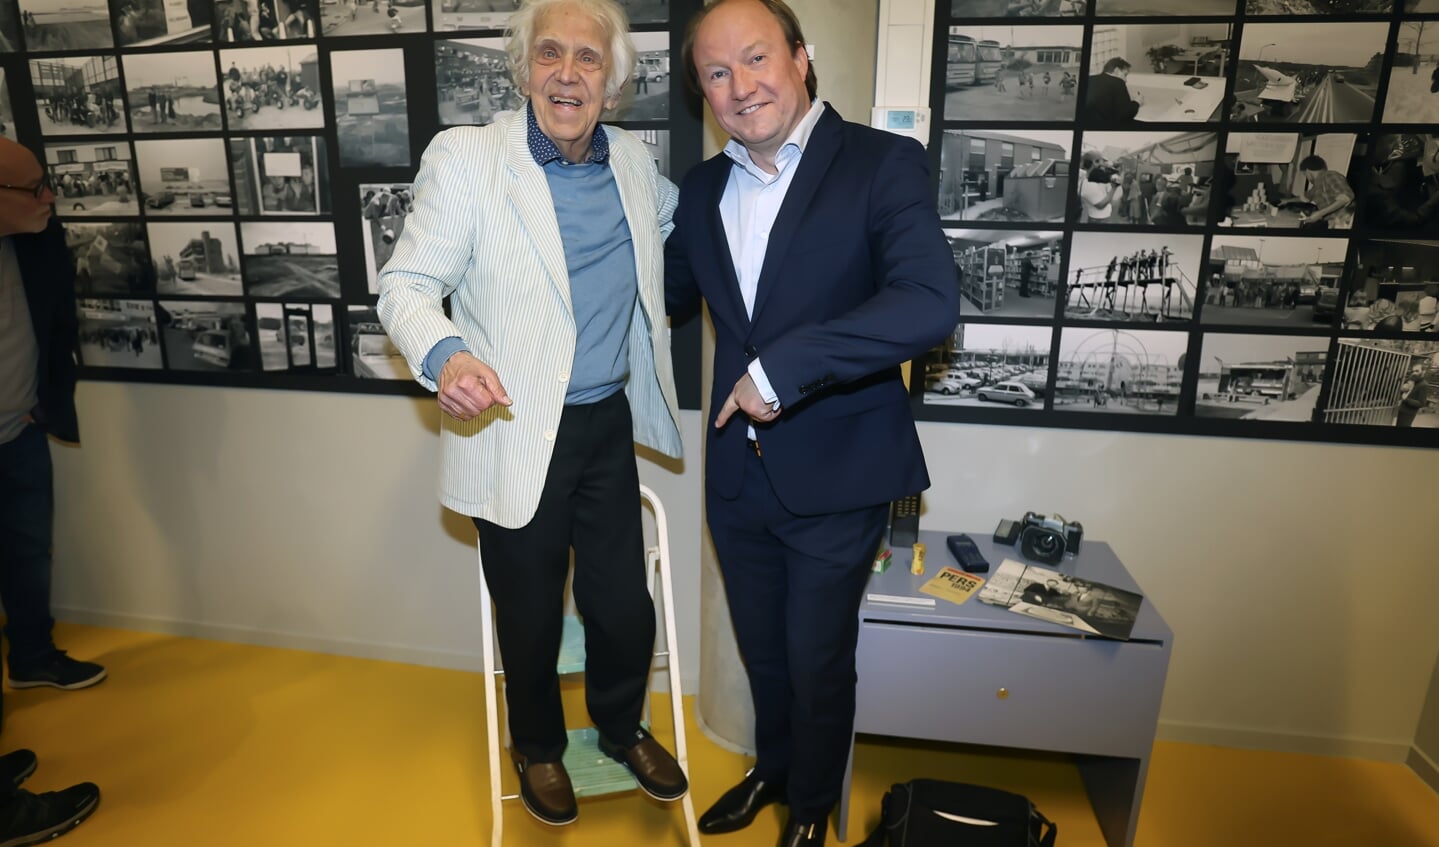 Bob Friedländer en burgemeester Hein van der Loo. Het bekende keukentrapje dat de persfotograaf vaak bij zich had als hij foto's ging maken is ook onderdeel van de tentoonstelling. (Foto: Fred Rotgans)